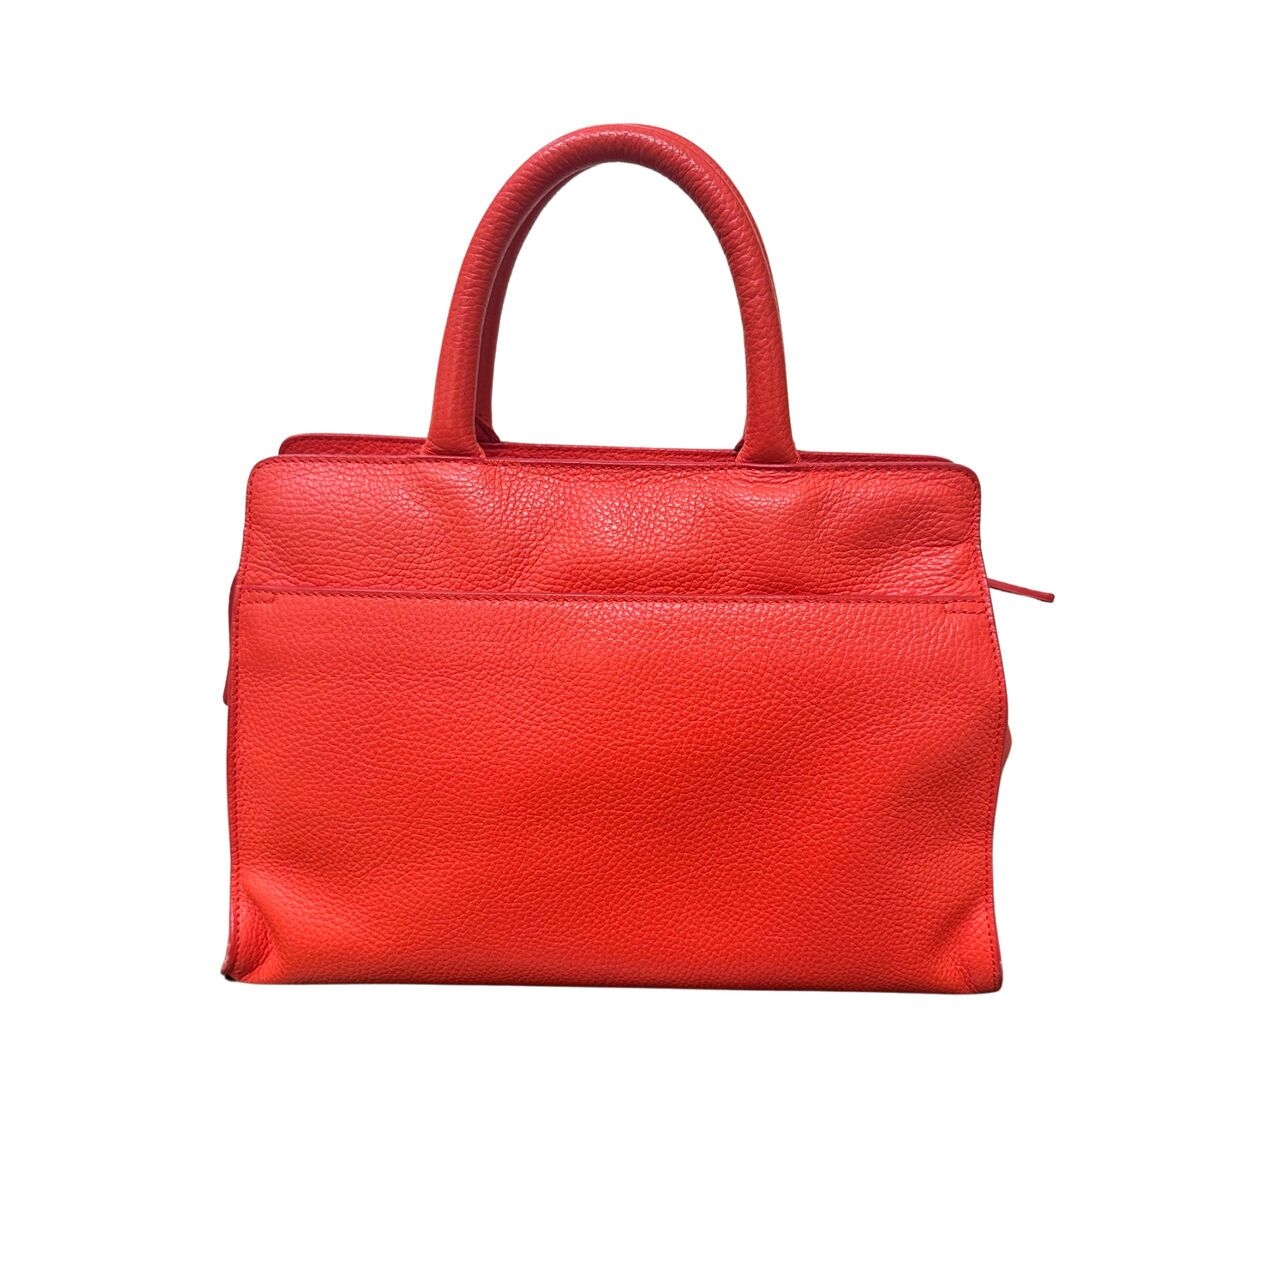 Aigner Orange & Red Satchel Bag